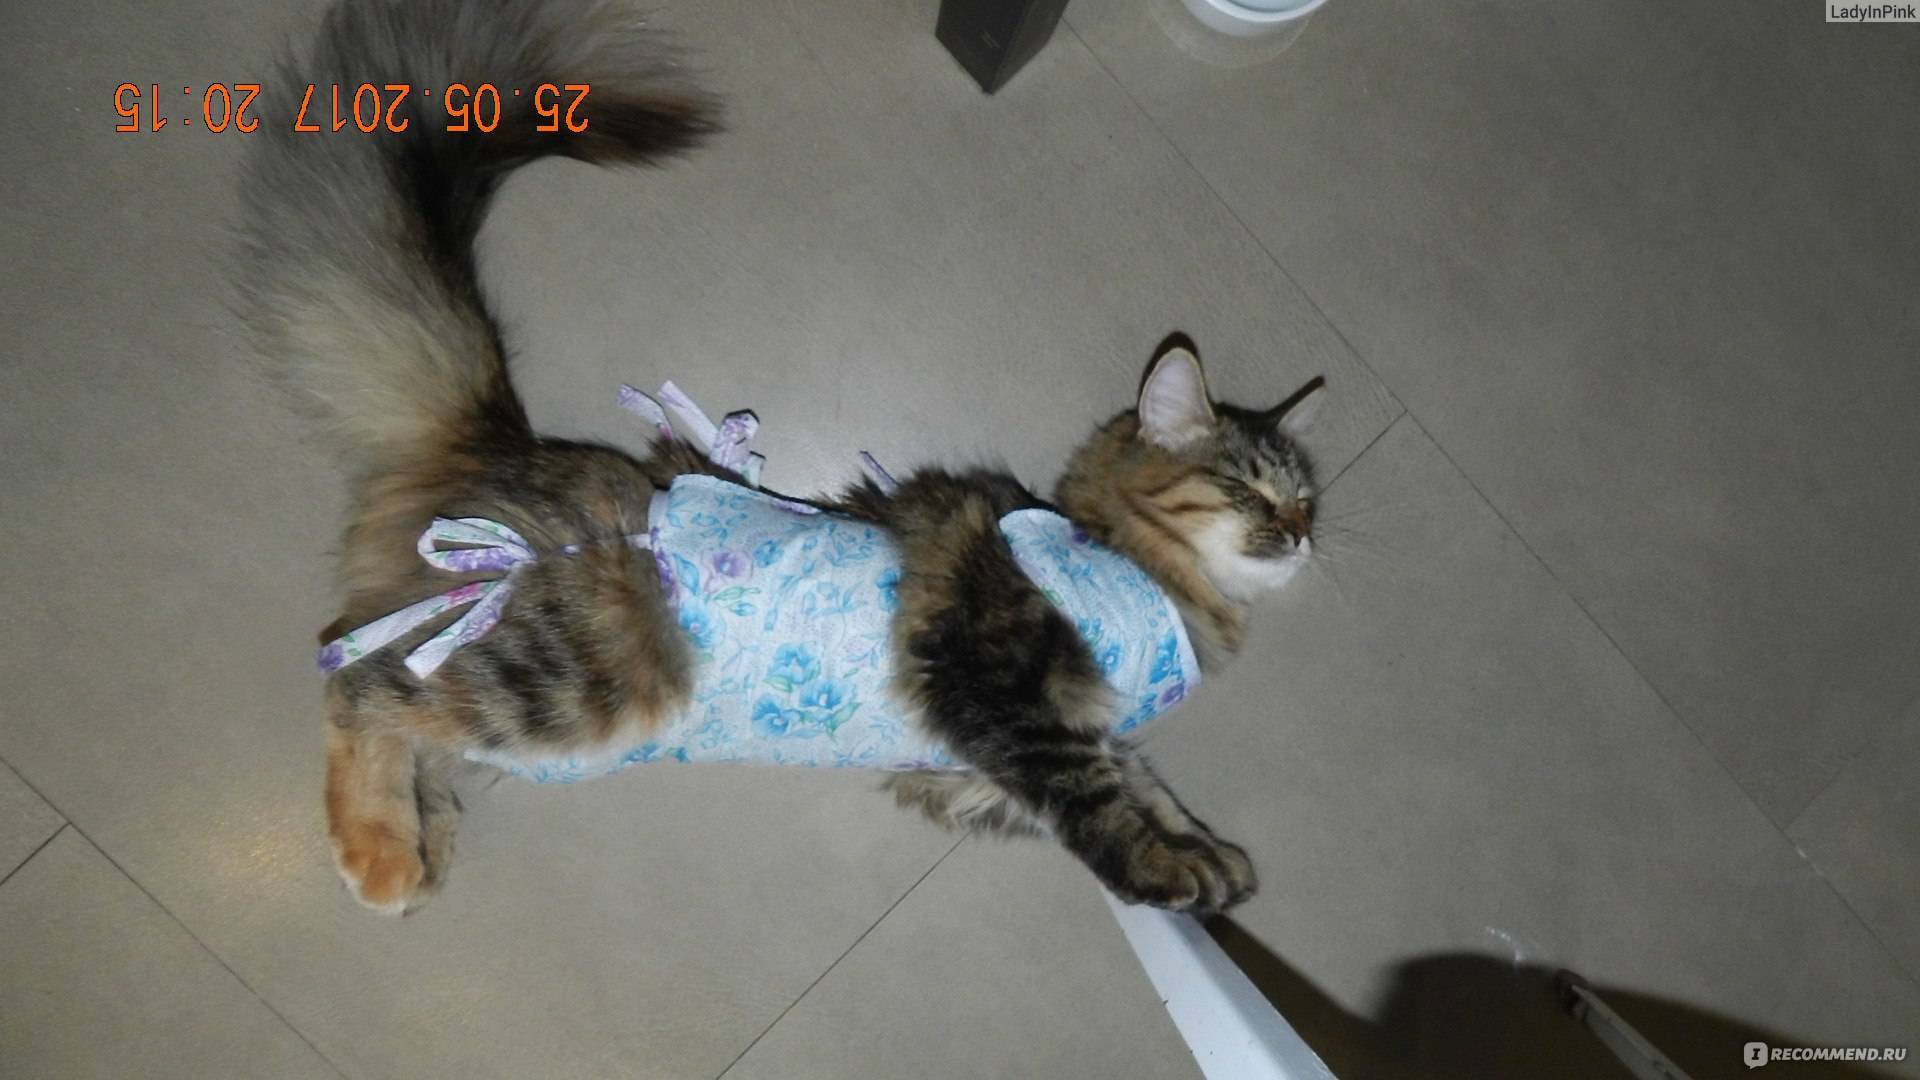 Сколько носить попону после стерилизации кошки, через сколько дней снимать